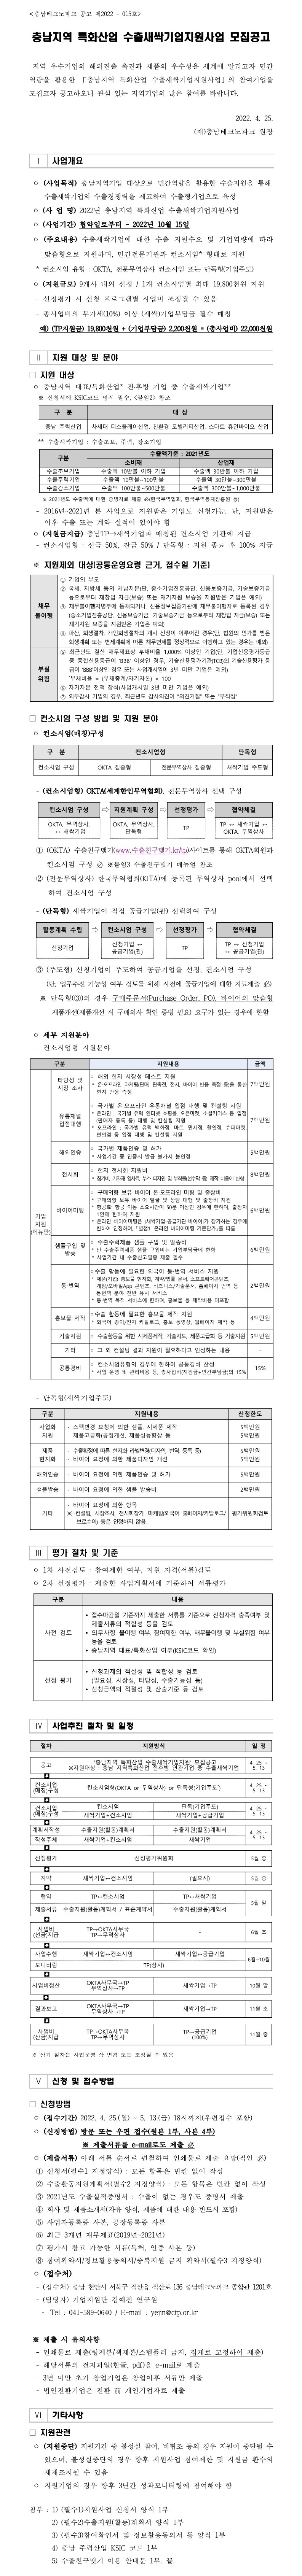 2022 충남지역 수출새싹기업지원사업 공고문_2.jpg